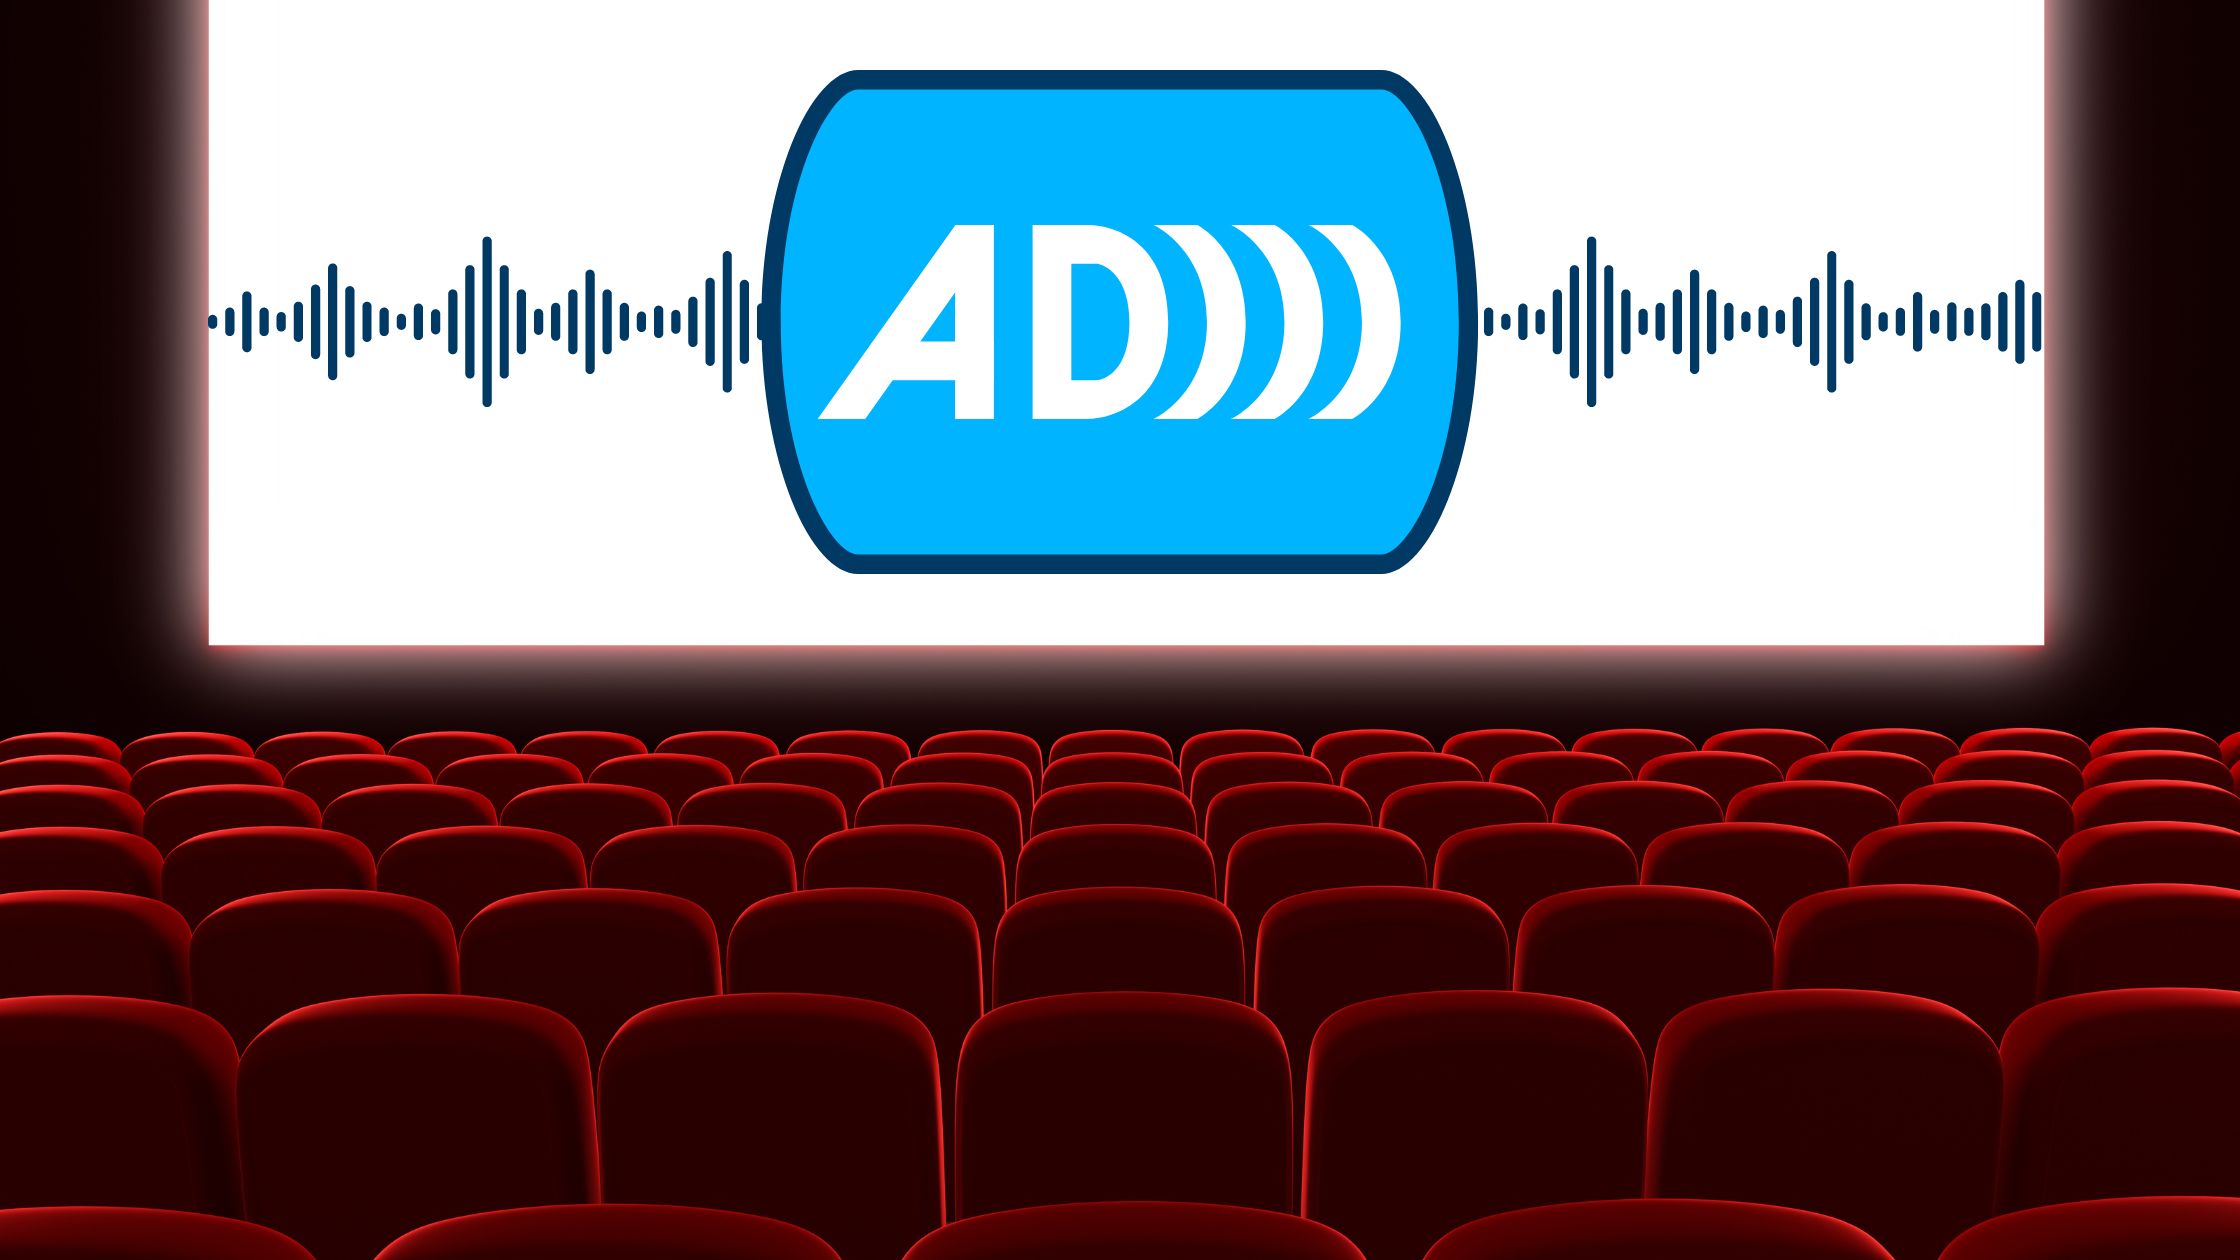 Sala kinowa, rzędy krzeseł, na ekranie symbol audio deskrypcji: duże litery AD.